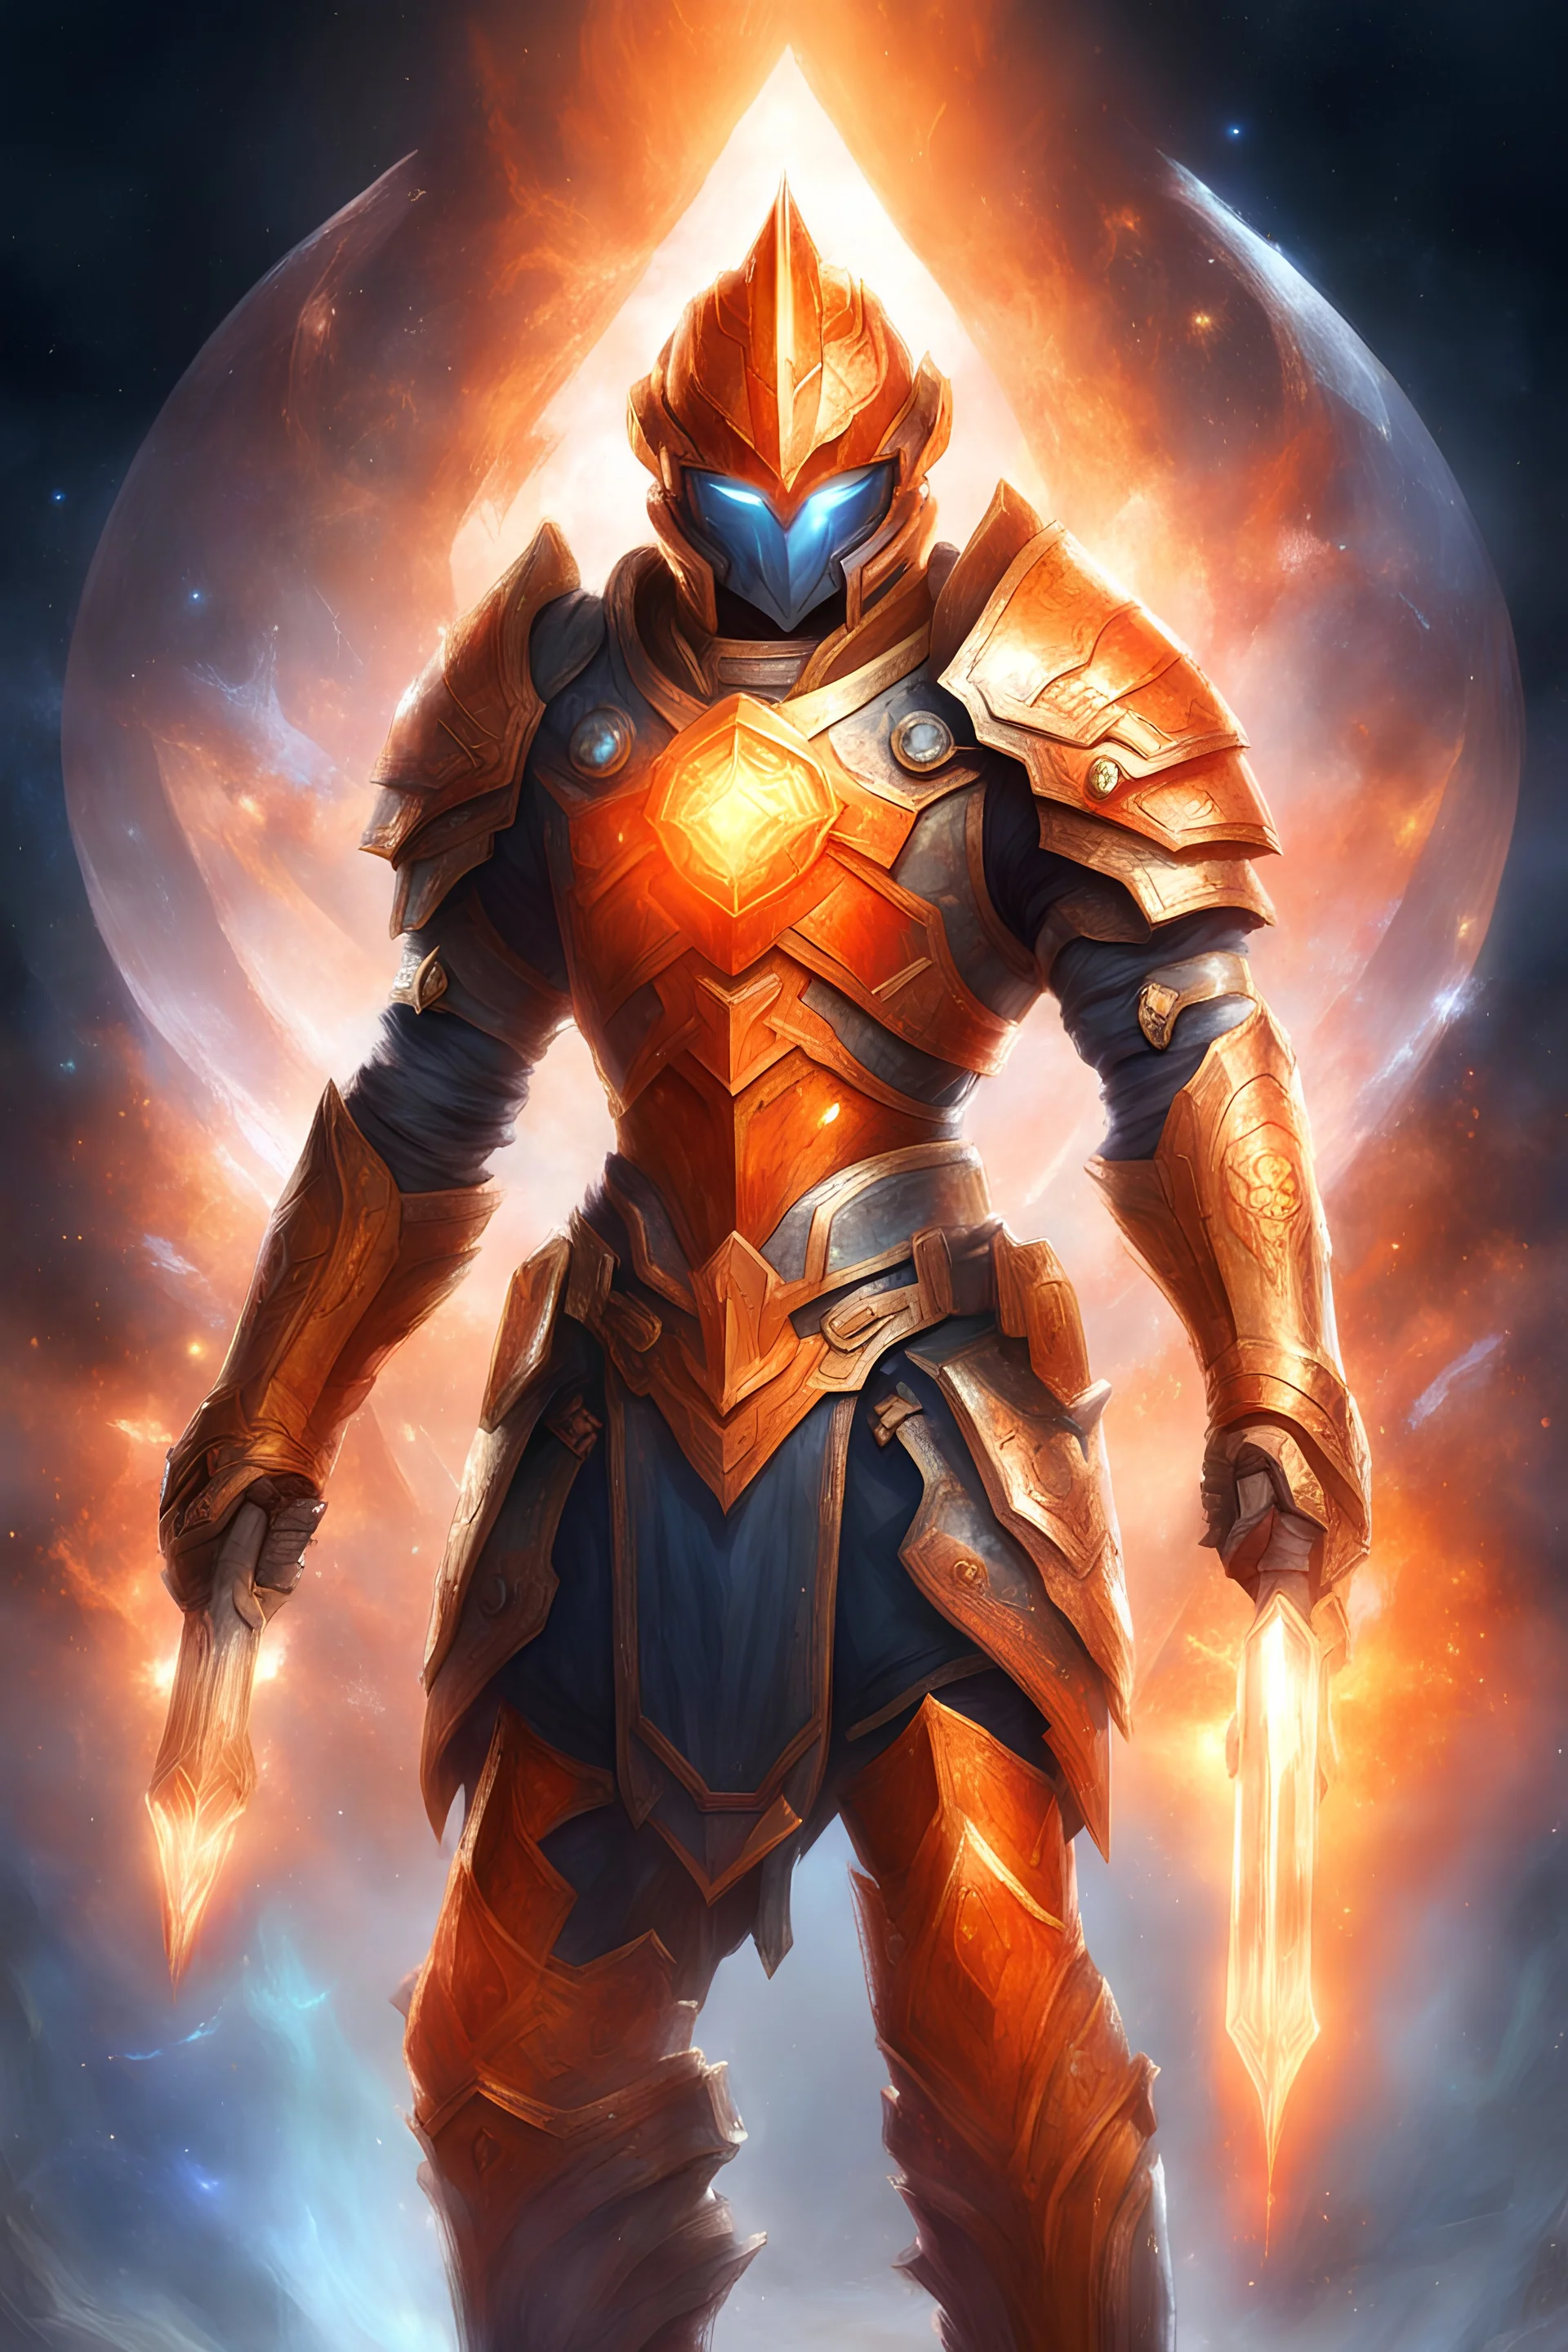 guerrier de la lumière, armure spatiale, cristaux, aura orange